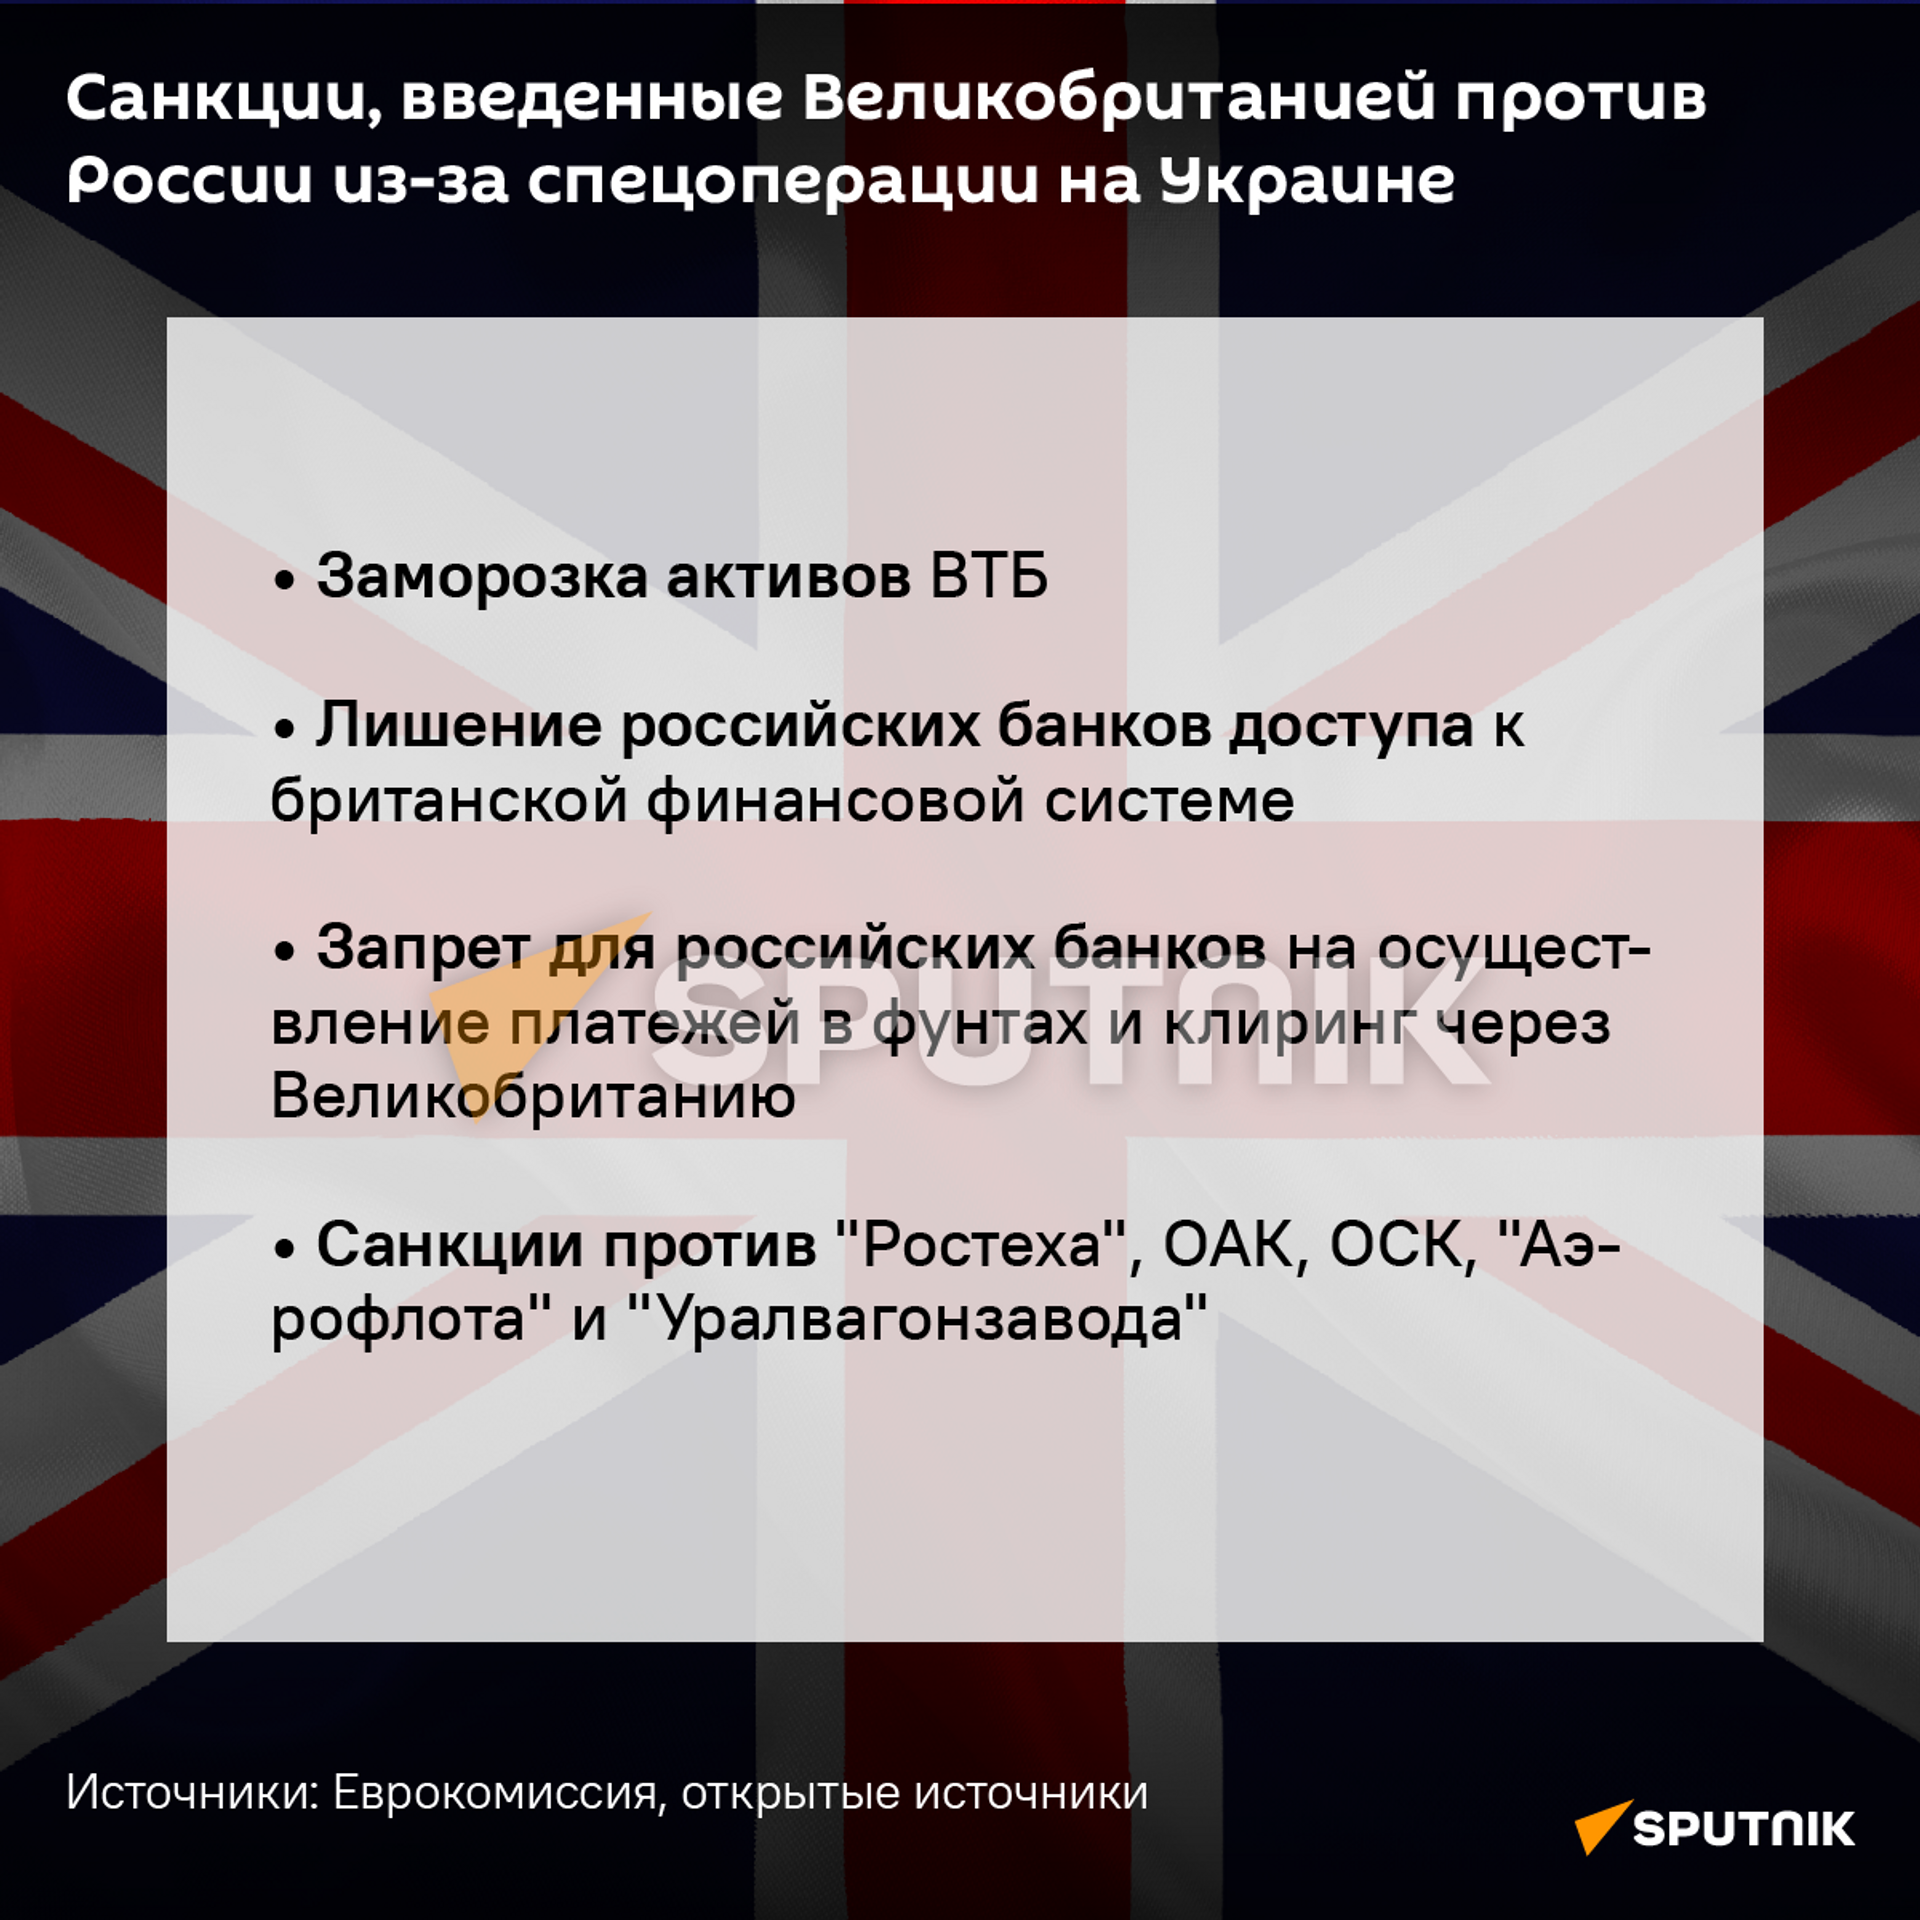 Санкции Великобритании, введенные против России - Sputnik Таджикистан, 1920, 26.02.2022